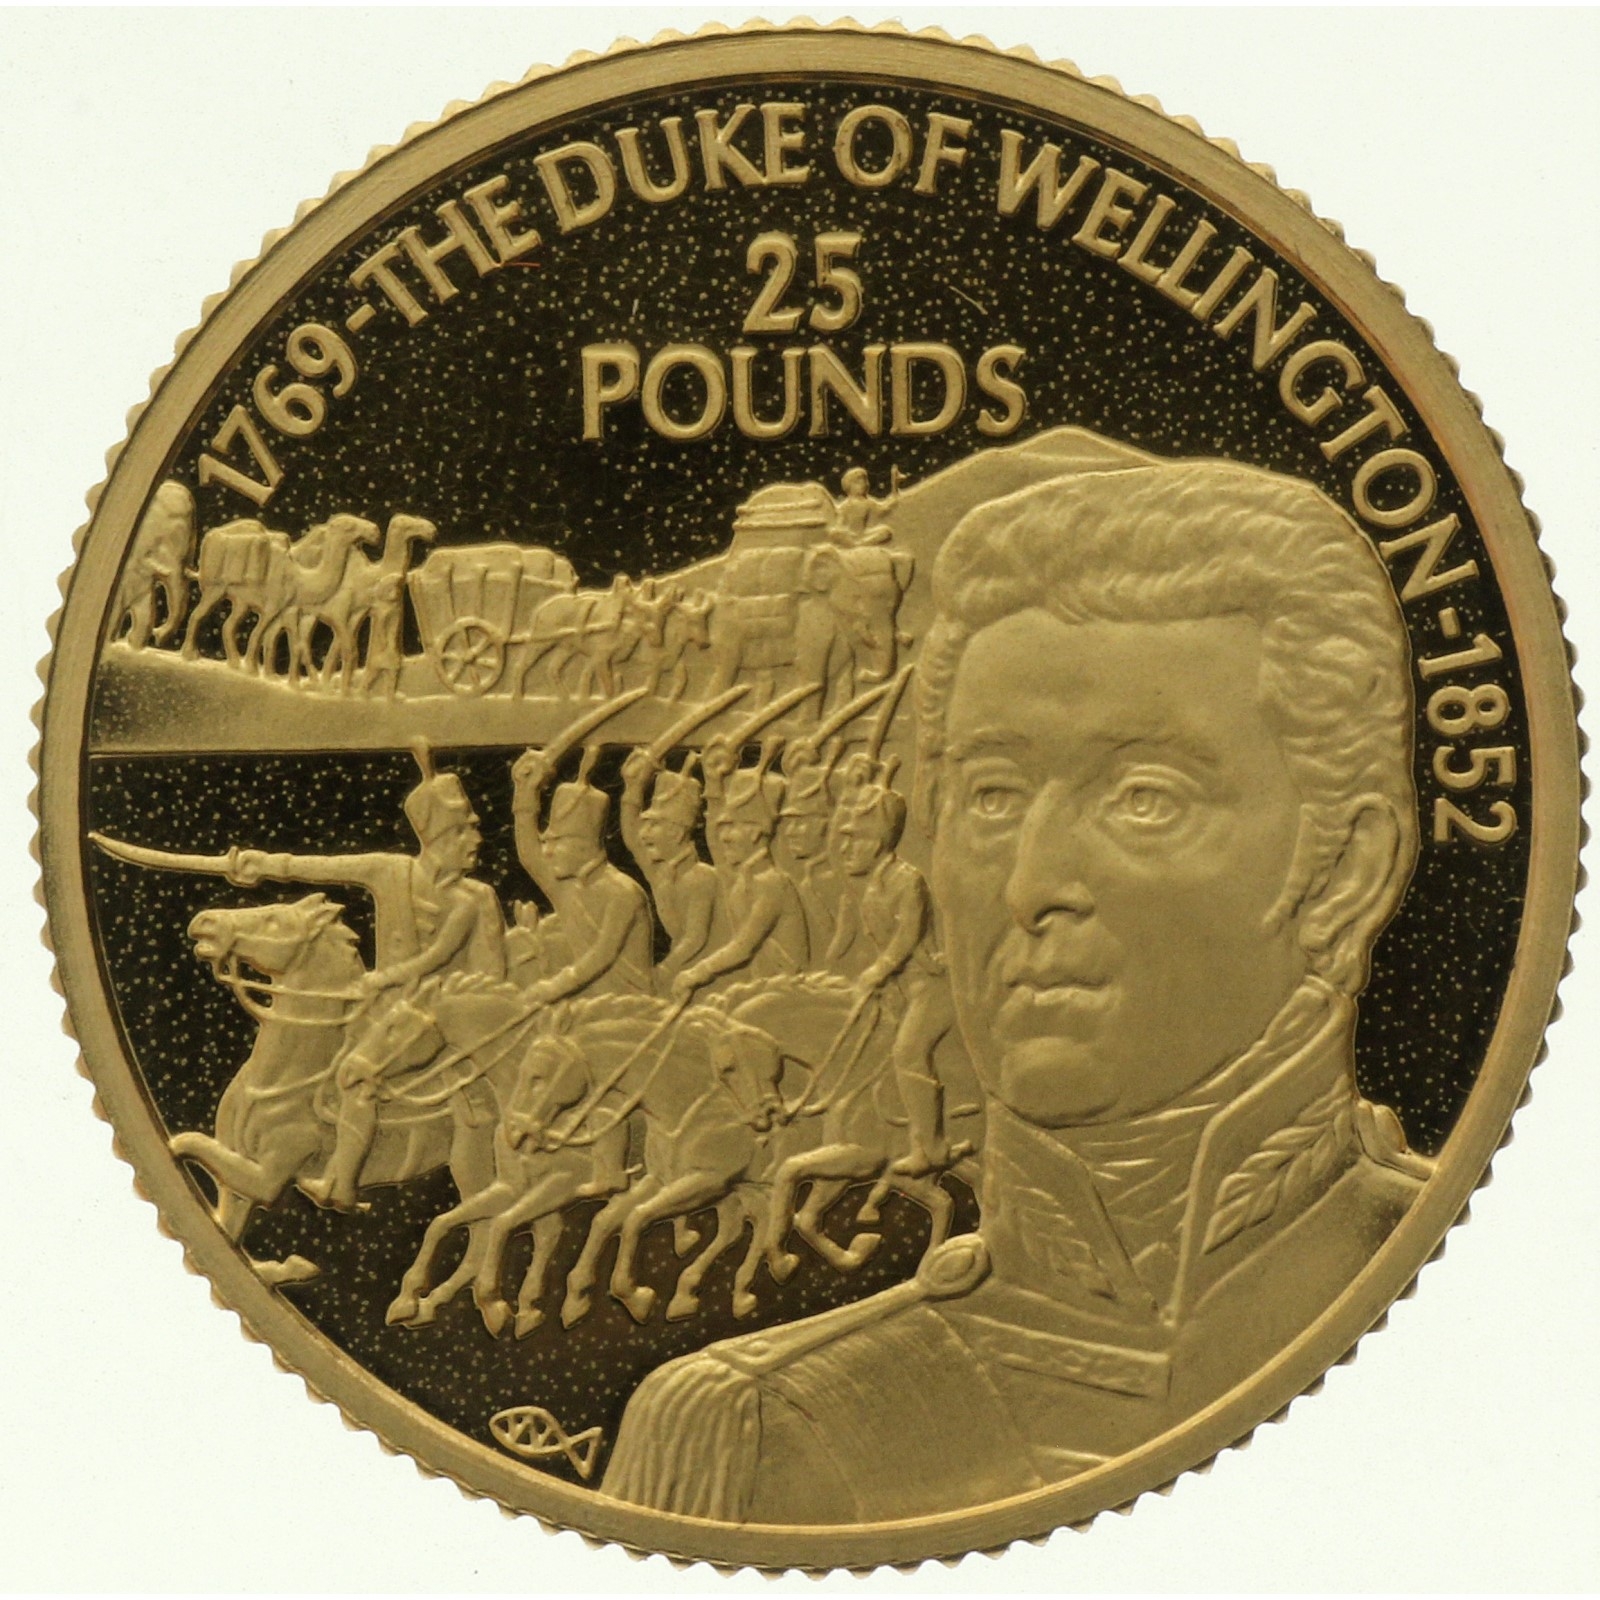 Guersney - 25 pounds - 2002 - Wellington